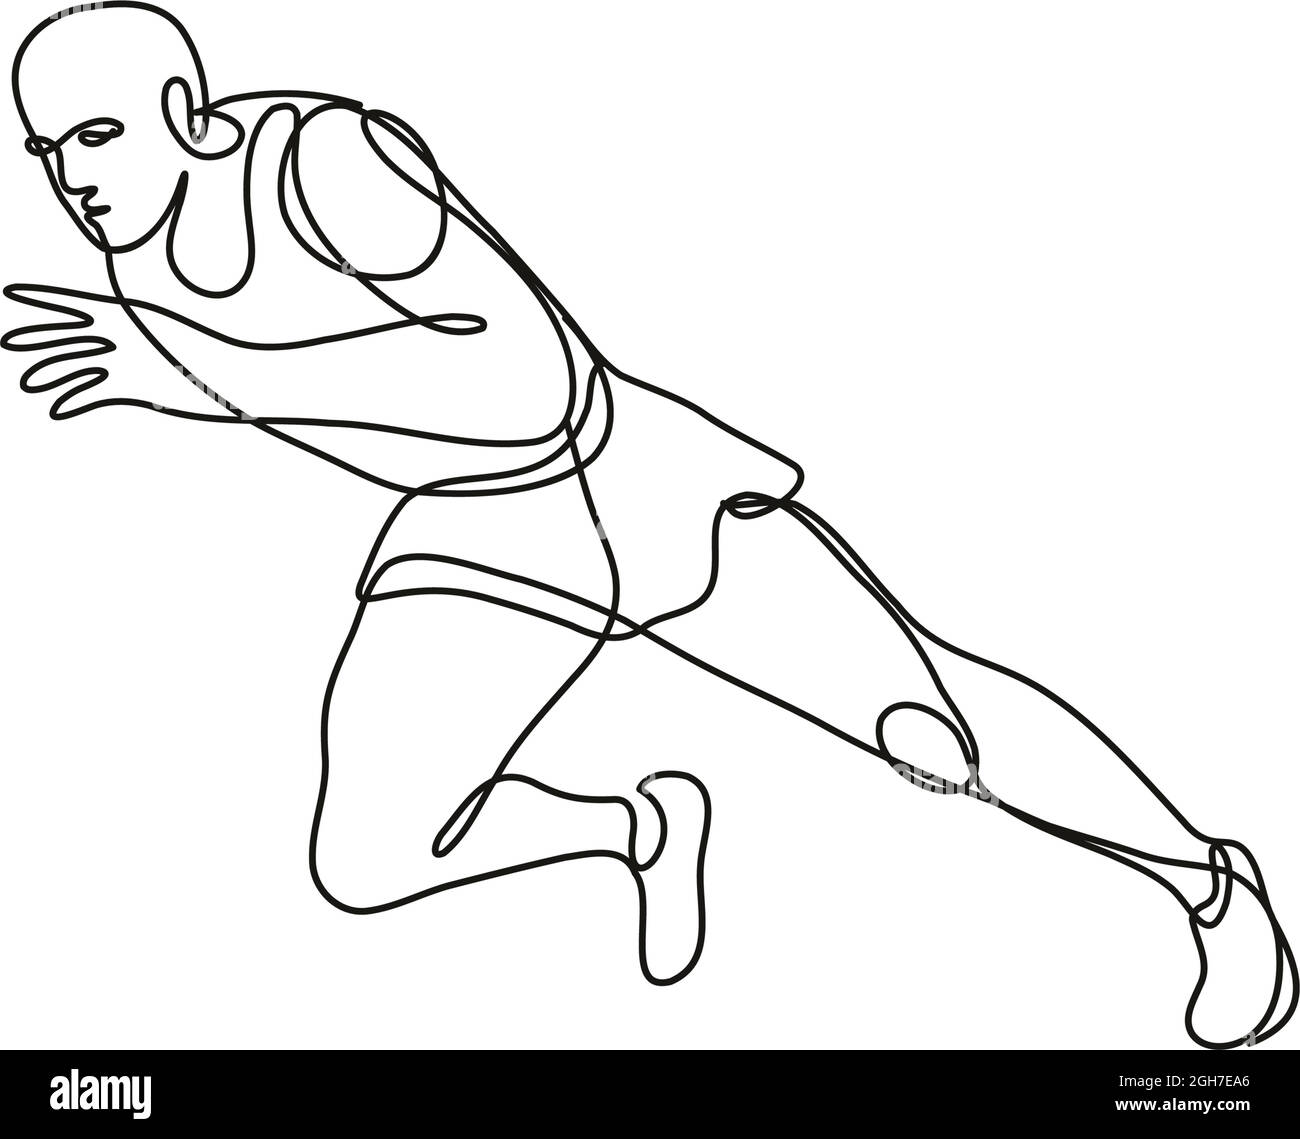 Dessin en ligne continue illustration d'un début de course d'athlète de terrain et d'athlétisme fait en ligne simple ou en forme de doodle en noir et blanc sur le dos isolé Illustration de Vecteur